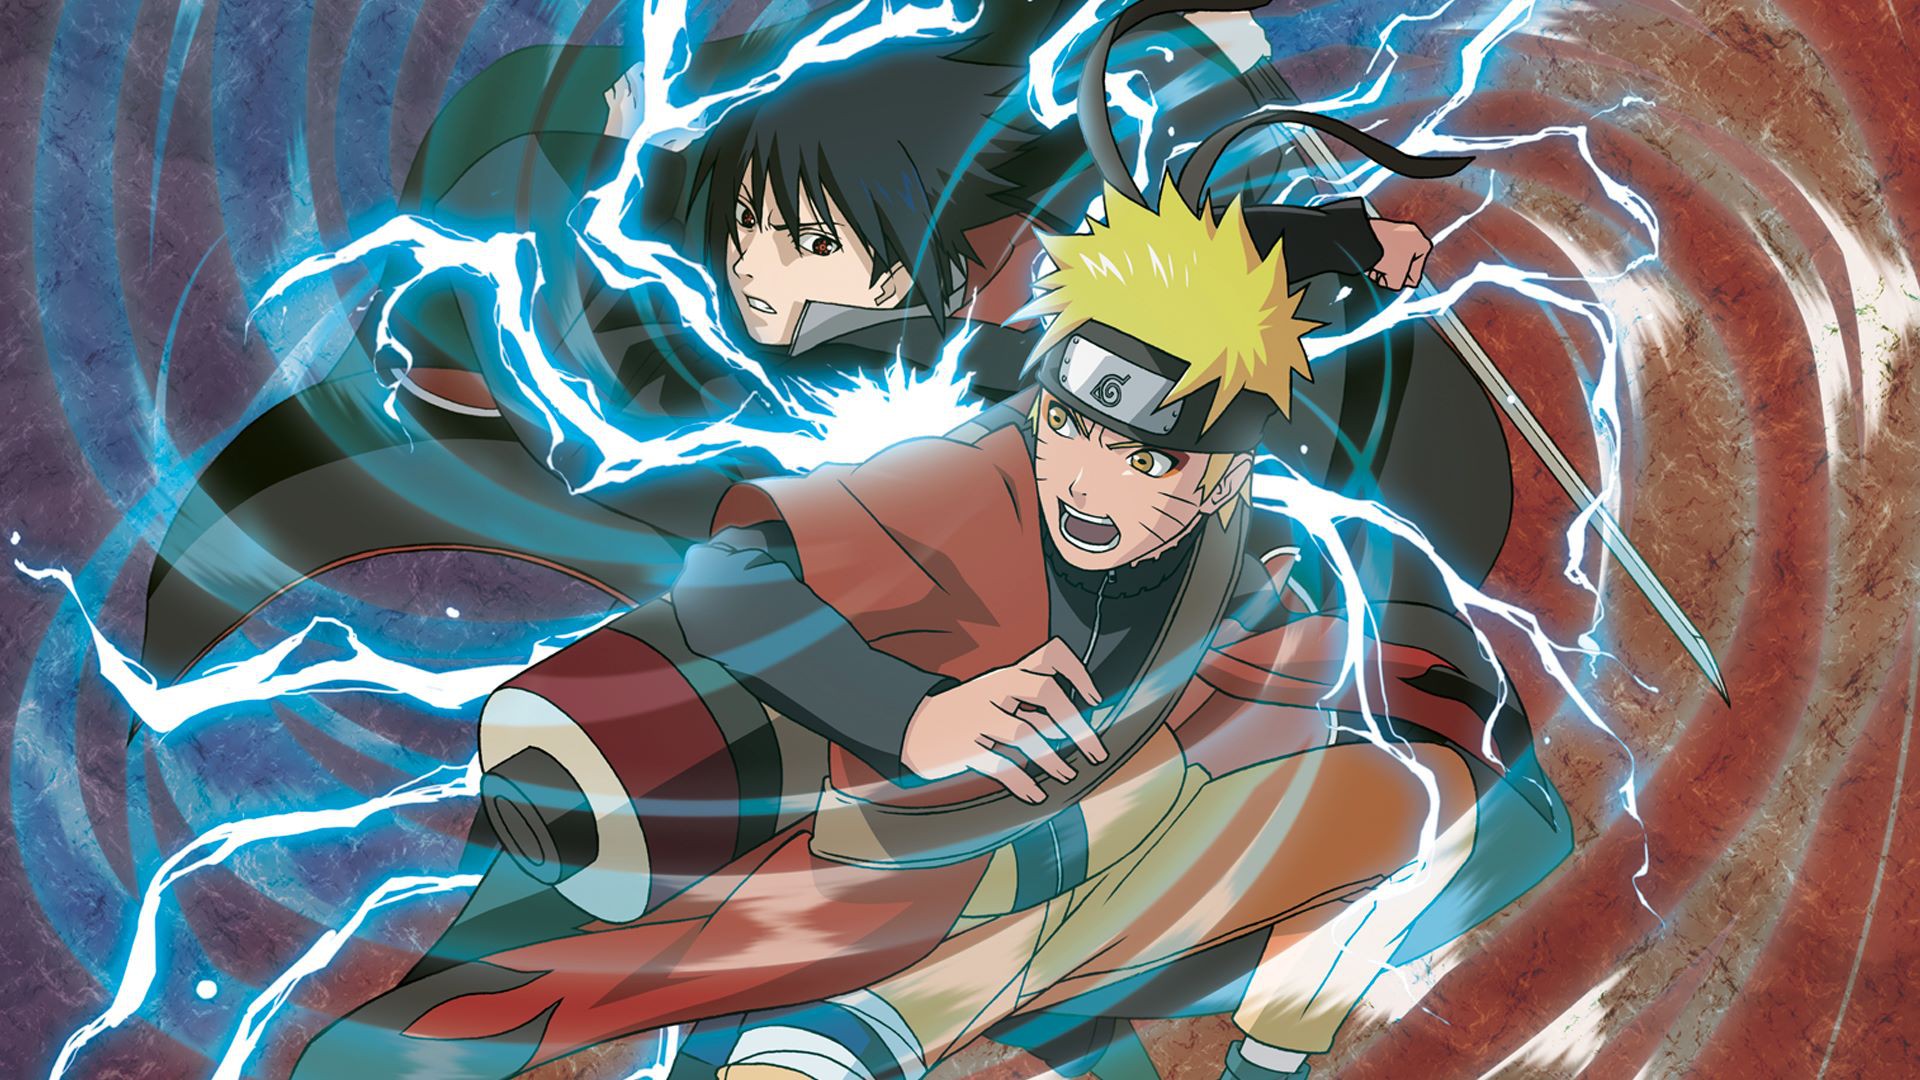 Naruto, Sakura và Sasuke: không thể trở thành một cặp? Hãy xem hình ảnh của họ để tìm ra câu trả lời chính xác. Với tình yêu vô bờ và sự kết hợp hoàn hảo trong những trận chiến, liệu họ có thể trở thành một cặp đôi đáng yêu?